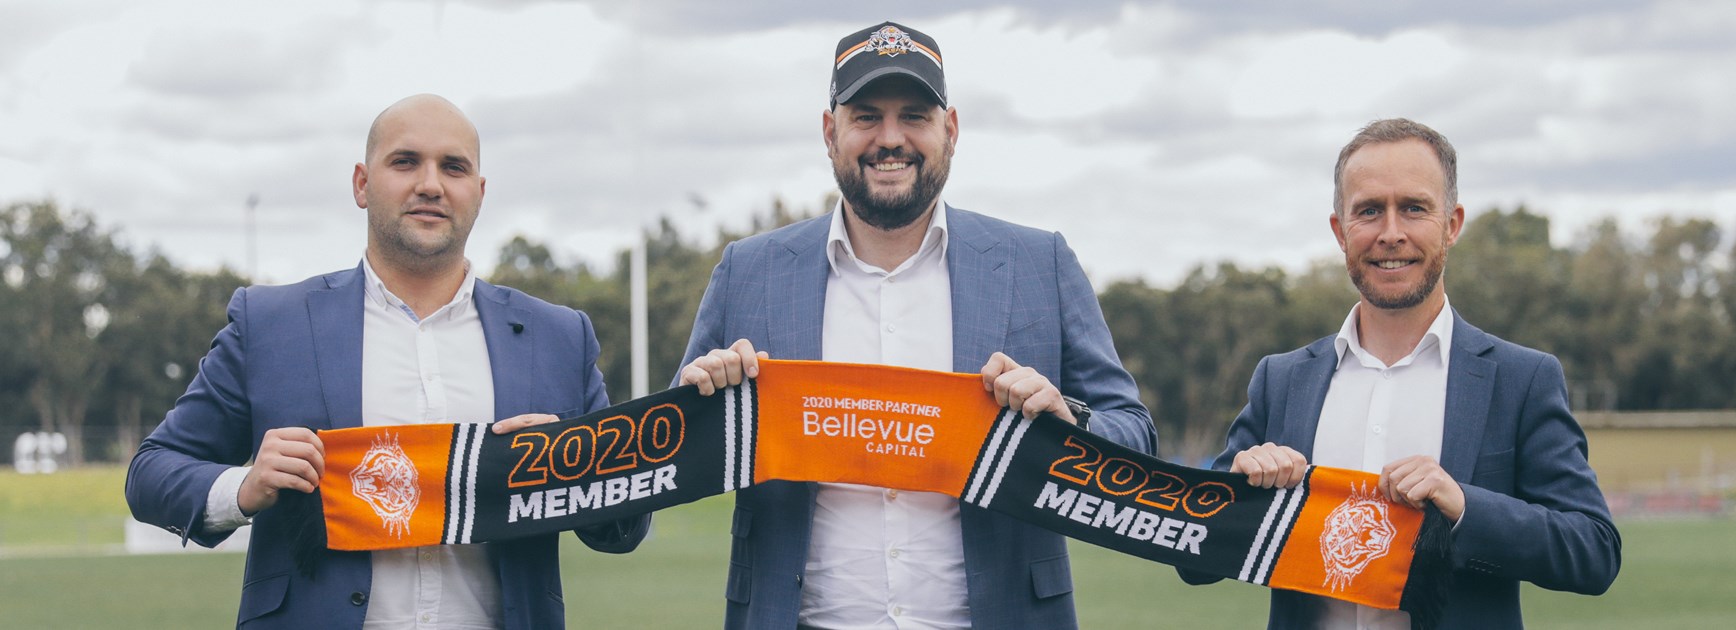 Bellevue Capital joins Wests Tigers as Membership Partner